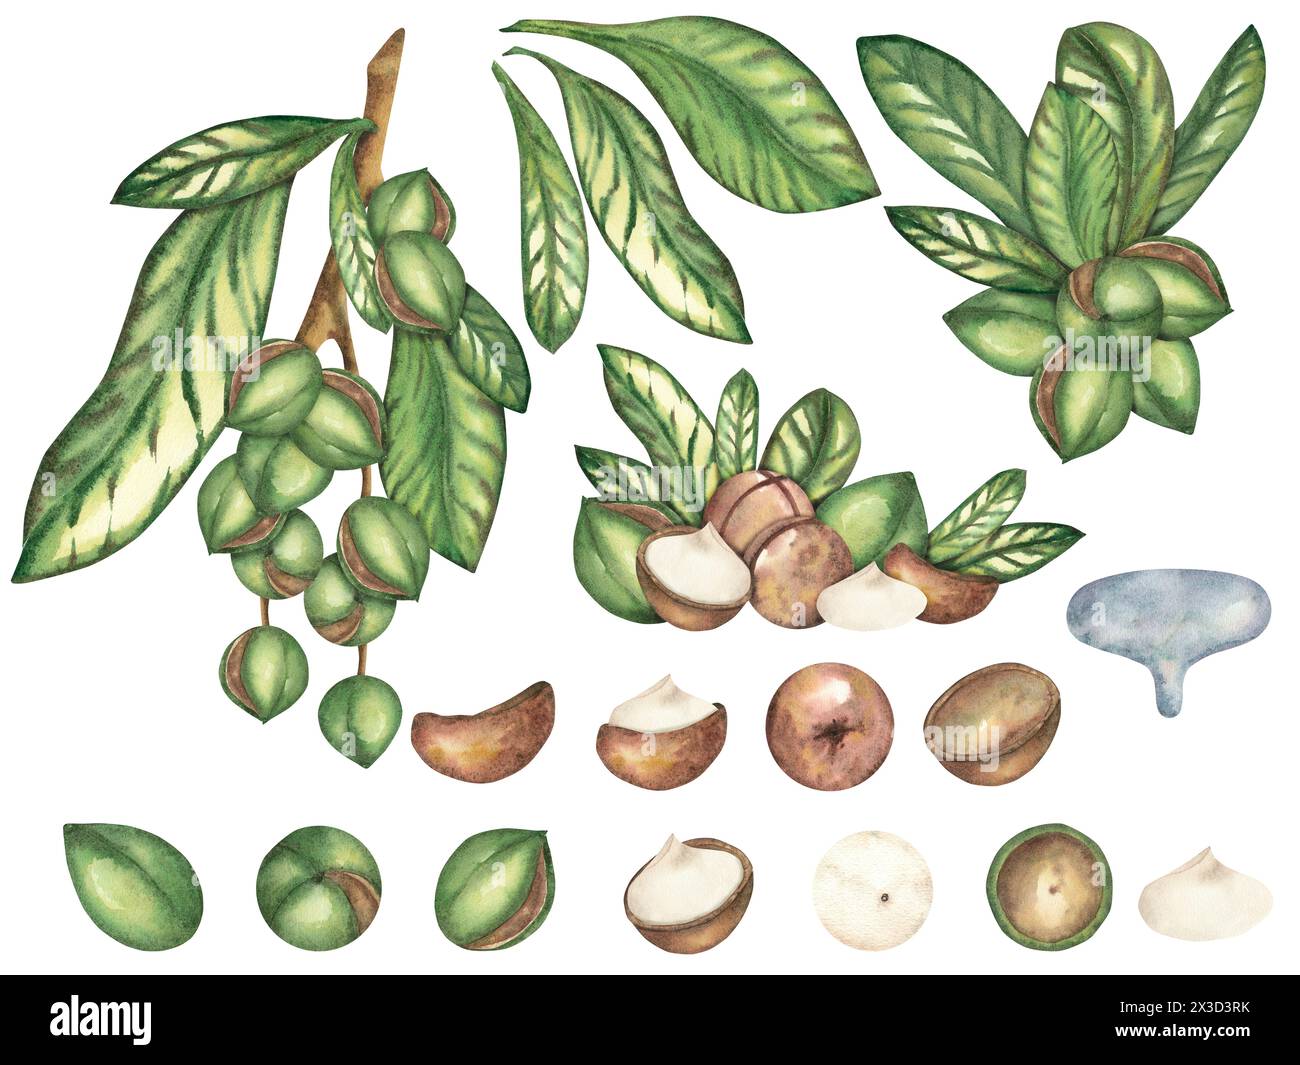 Noix de macadamia sur fond blanc, une composition de plusieurs noix et feuilles. Le macadamia. Nourriture, collations, noix brune, gros plan. Aquarelle il Banque D'Images